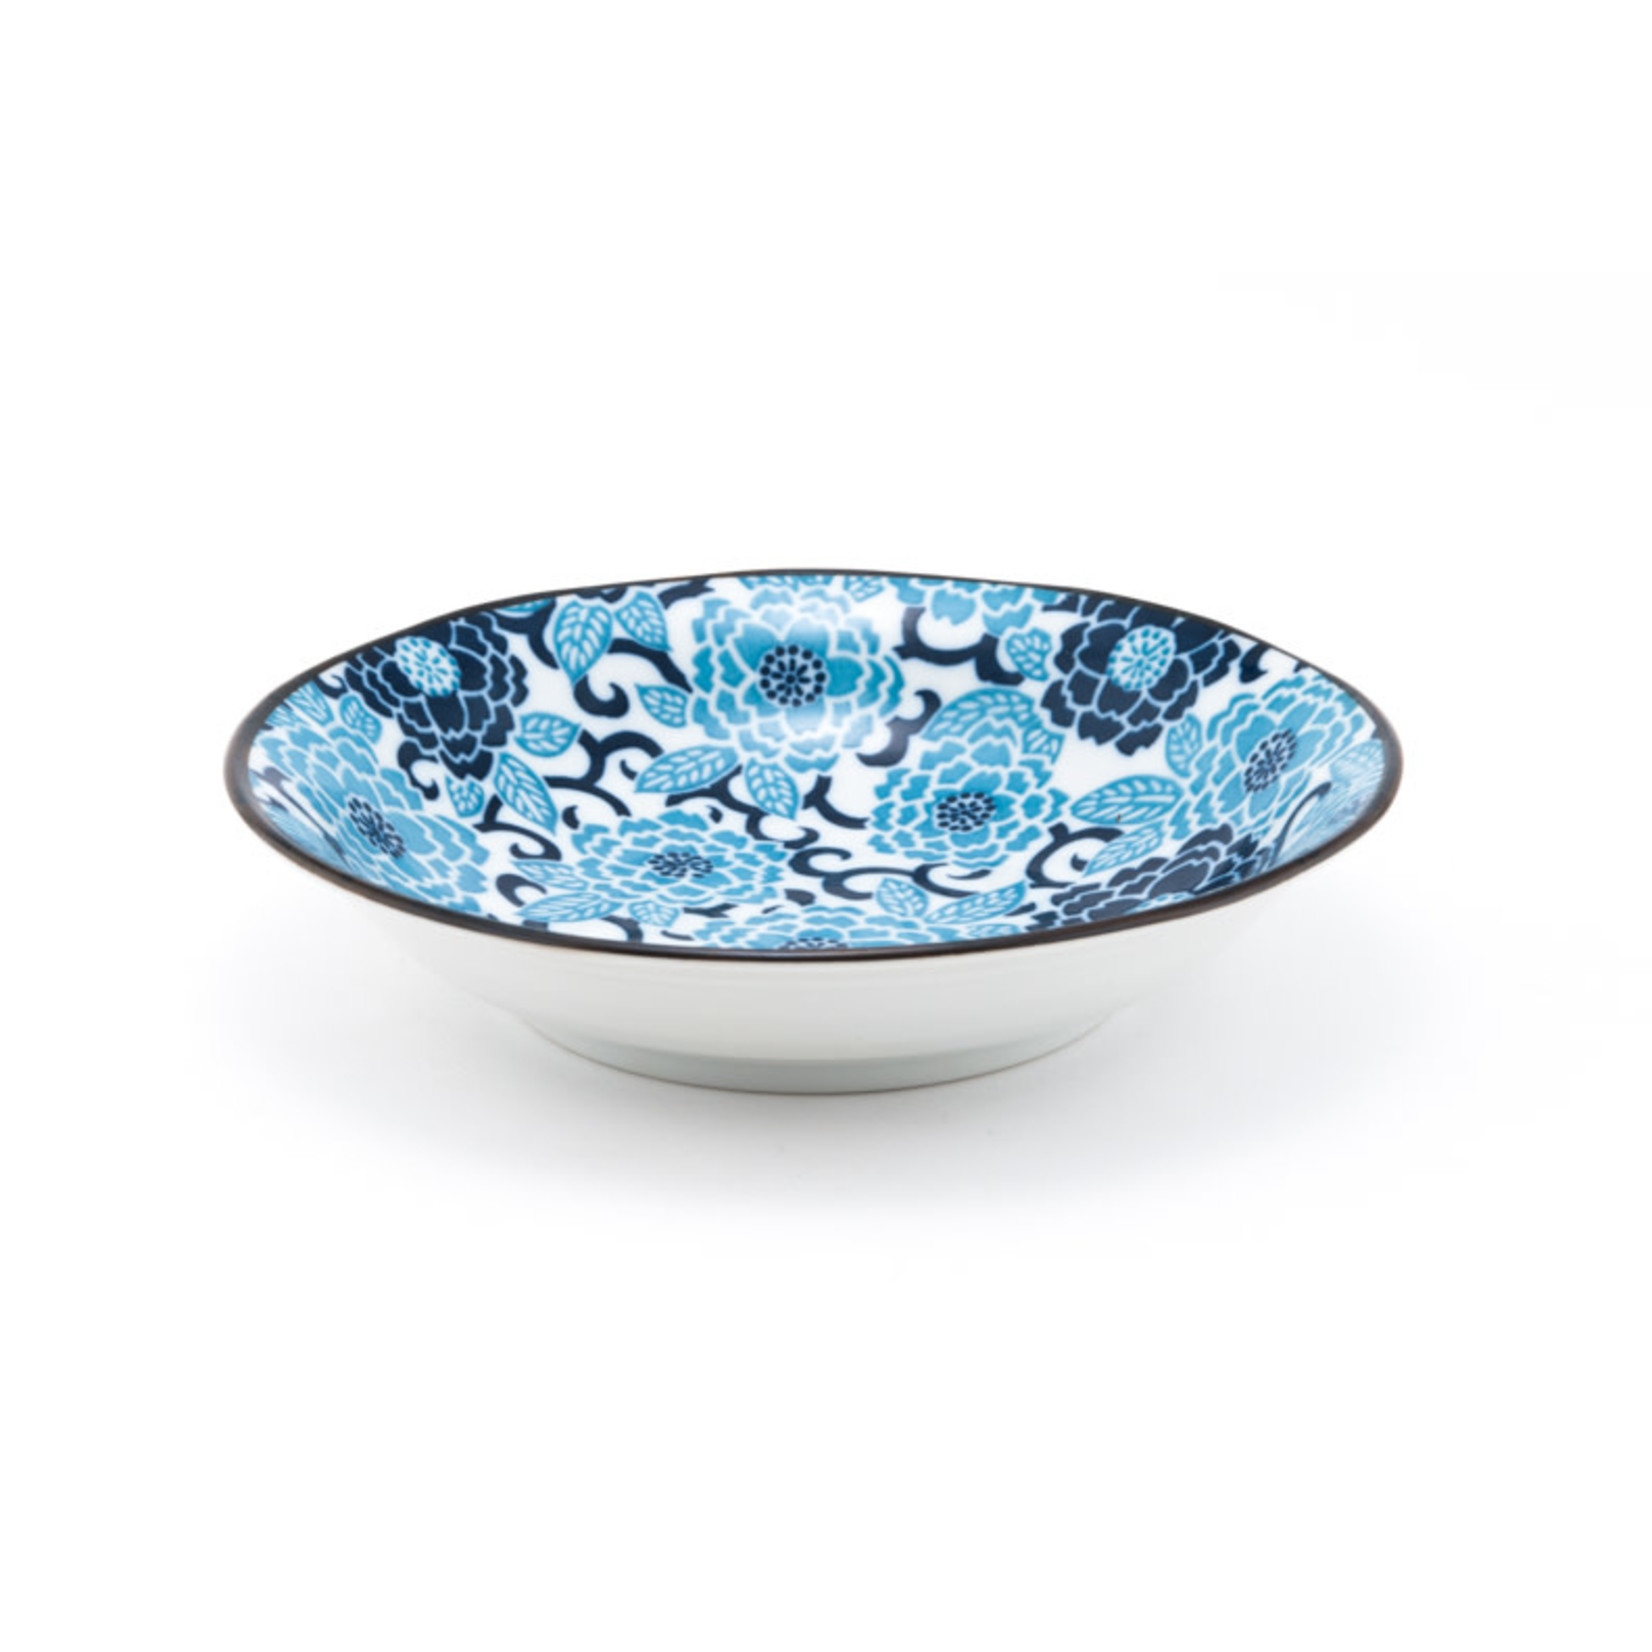 Minoru Deep Plate White w/Blue Floral Pattern 8"D x 1.75"H